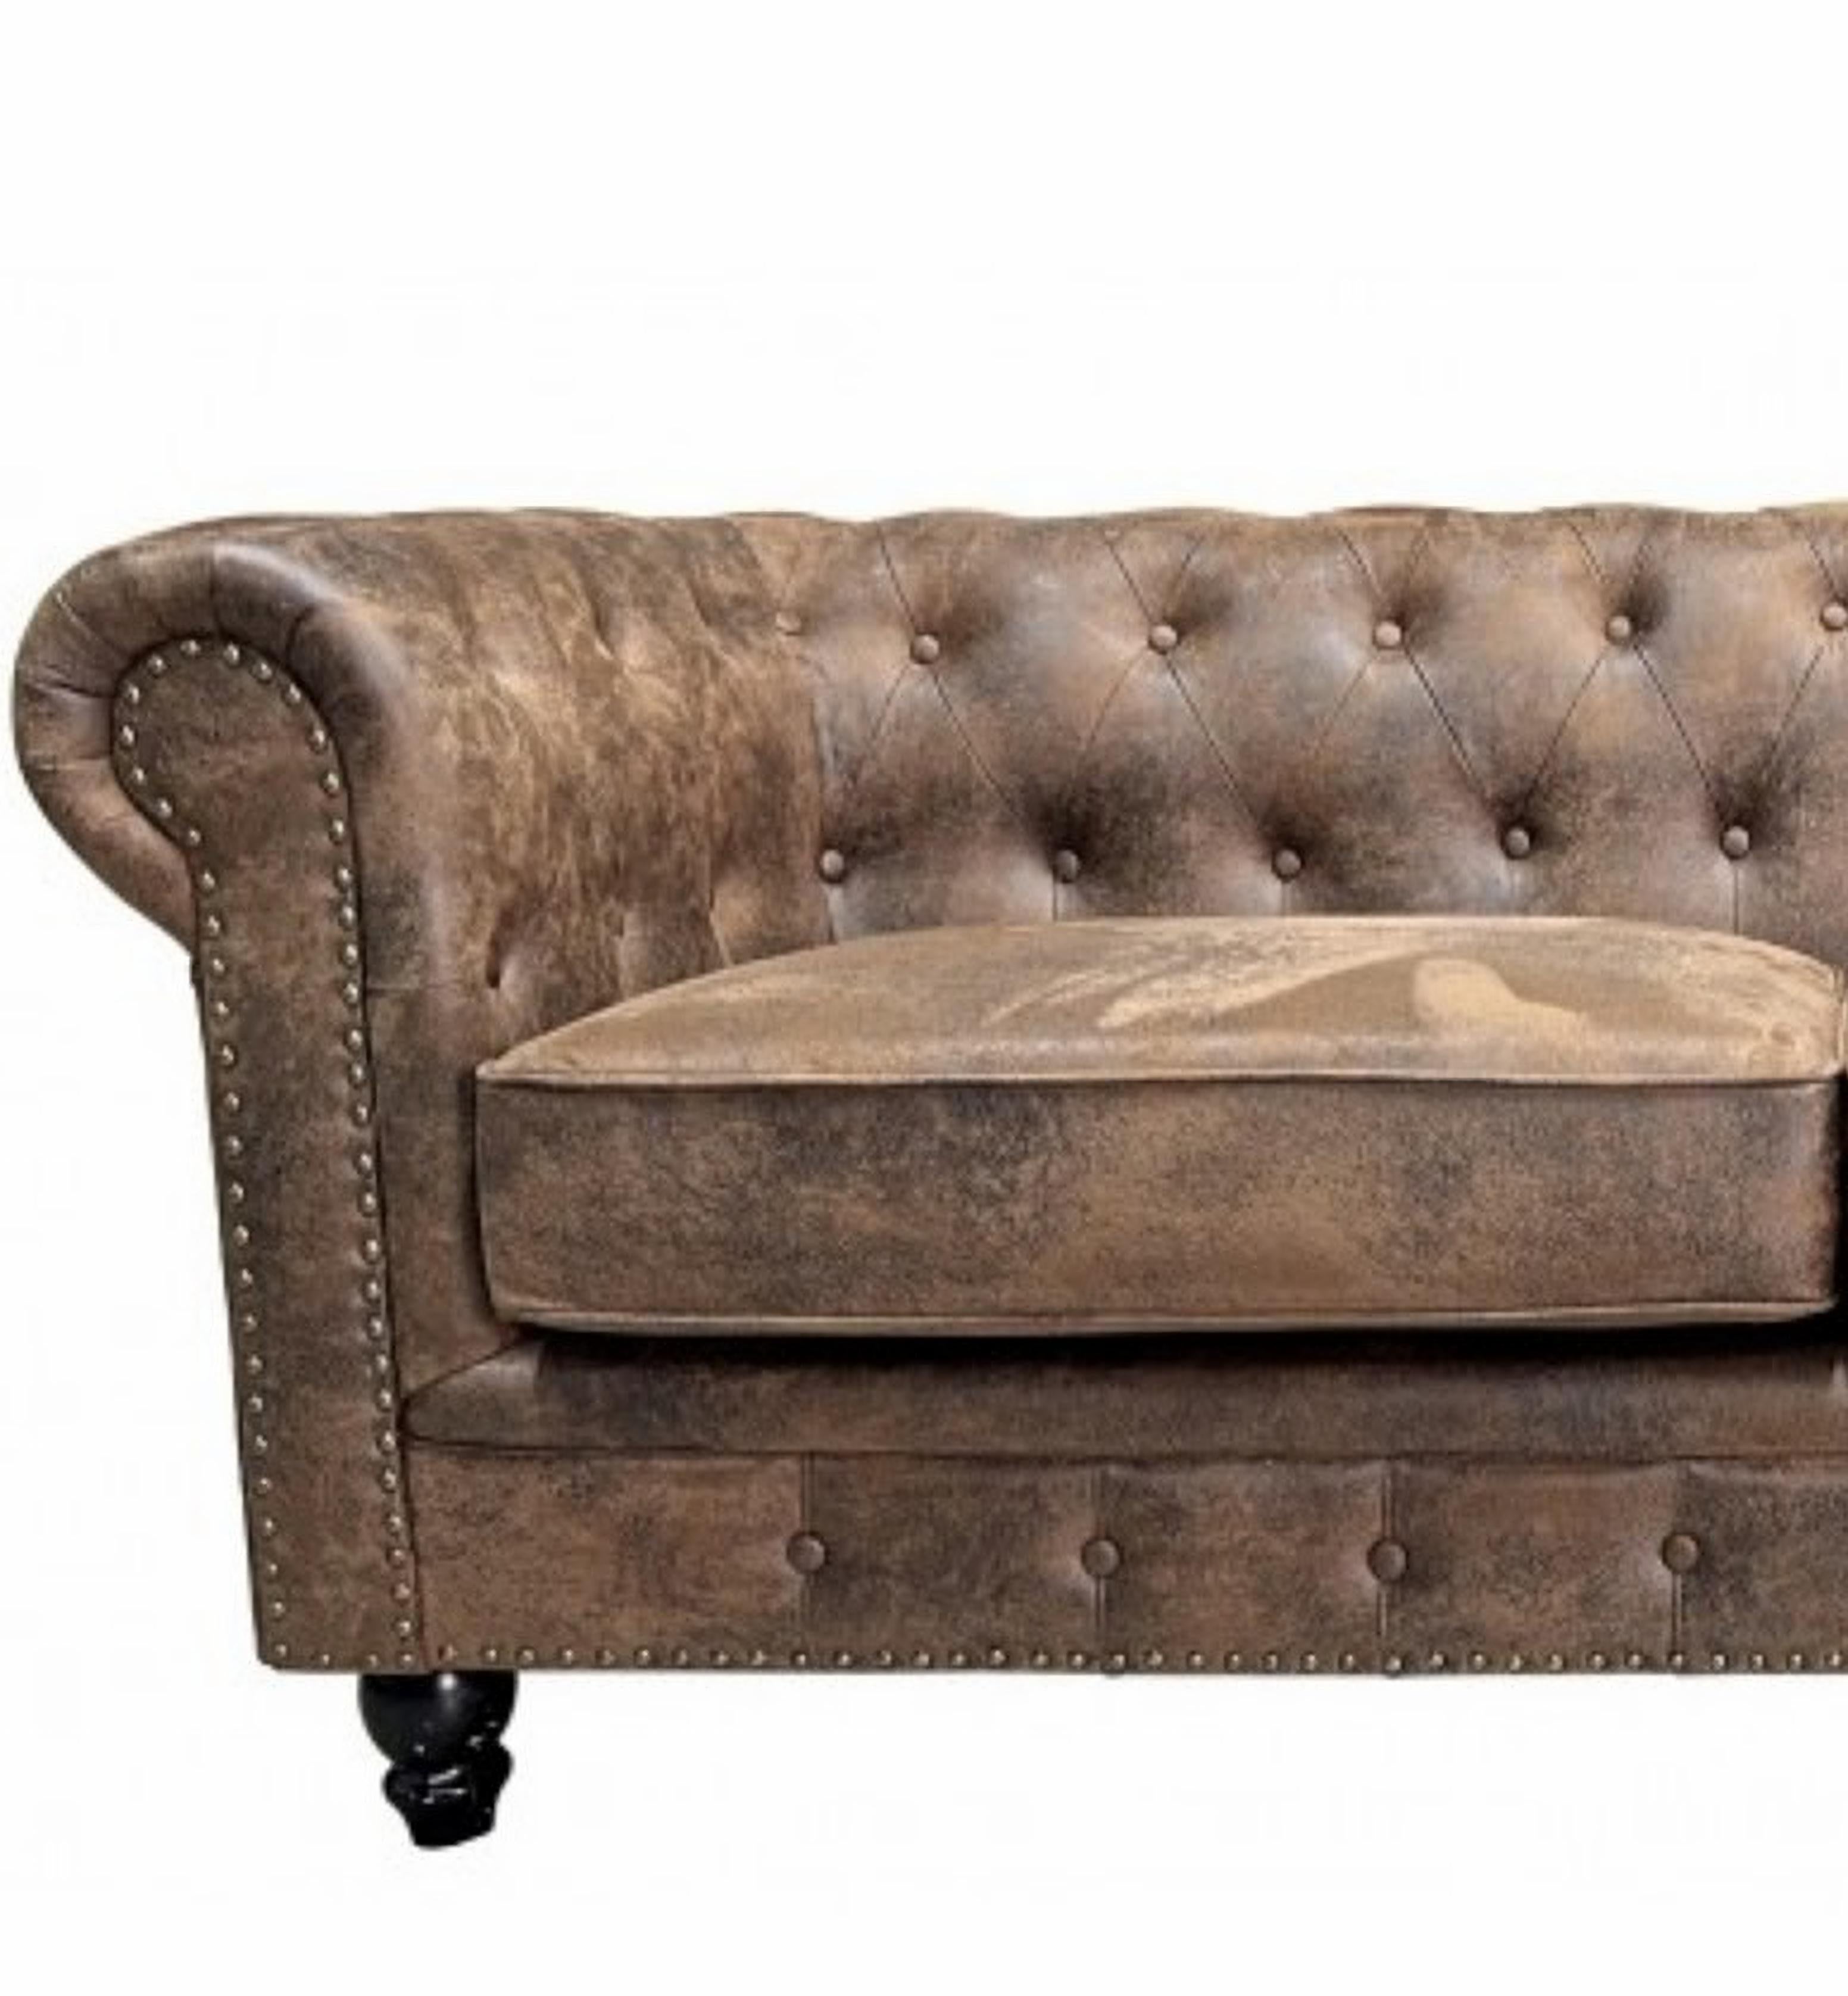 Chester Premium 3-Sitzer-Sofa, Vintage-Kunstleder

-Design-Sofa, 3 Sitze.

-Hergestellt aus einer soliden Holzstruktur.

Polyurethan-Schaumstoff mit hoher Dichte.

-Vintage-Kunstleder

2-Sitzer-Sofa passend, optional

-Andere Farben